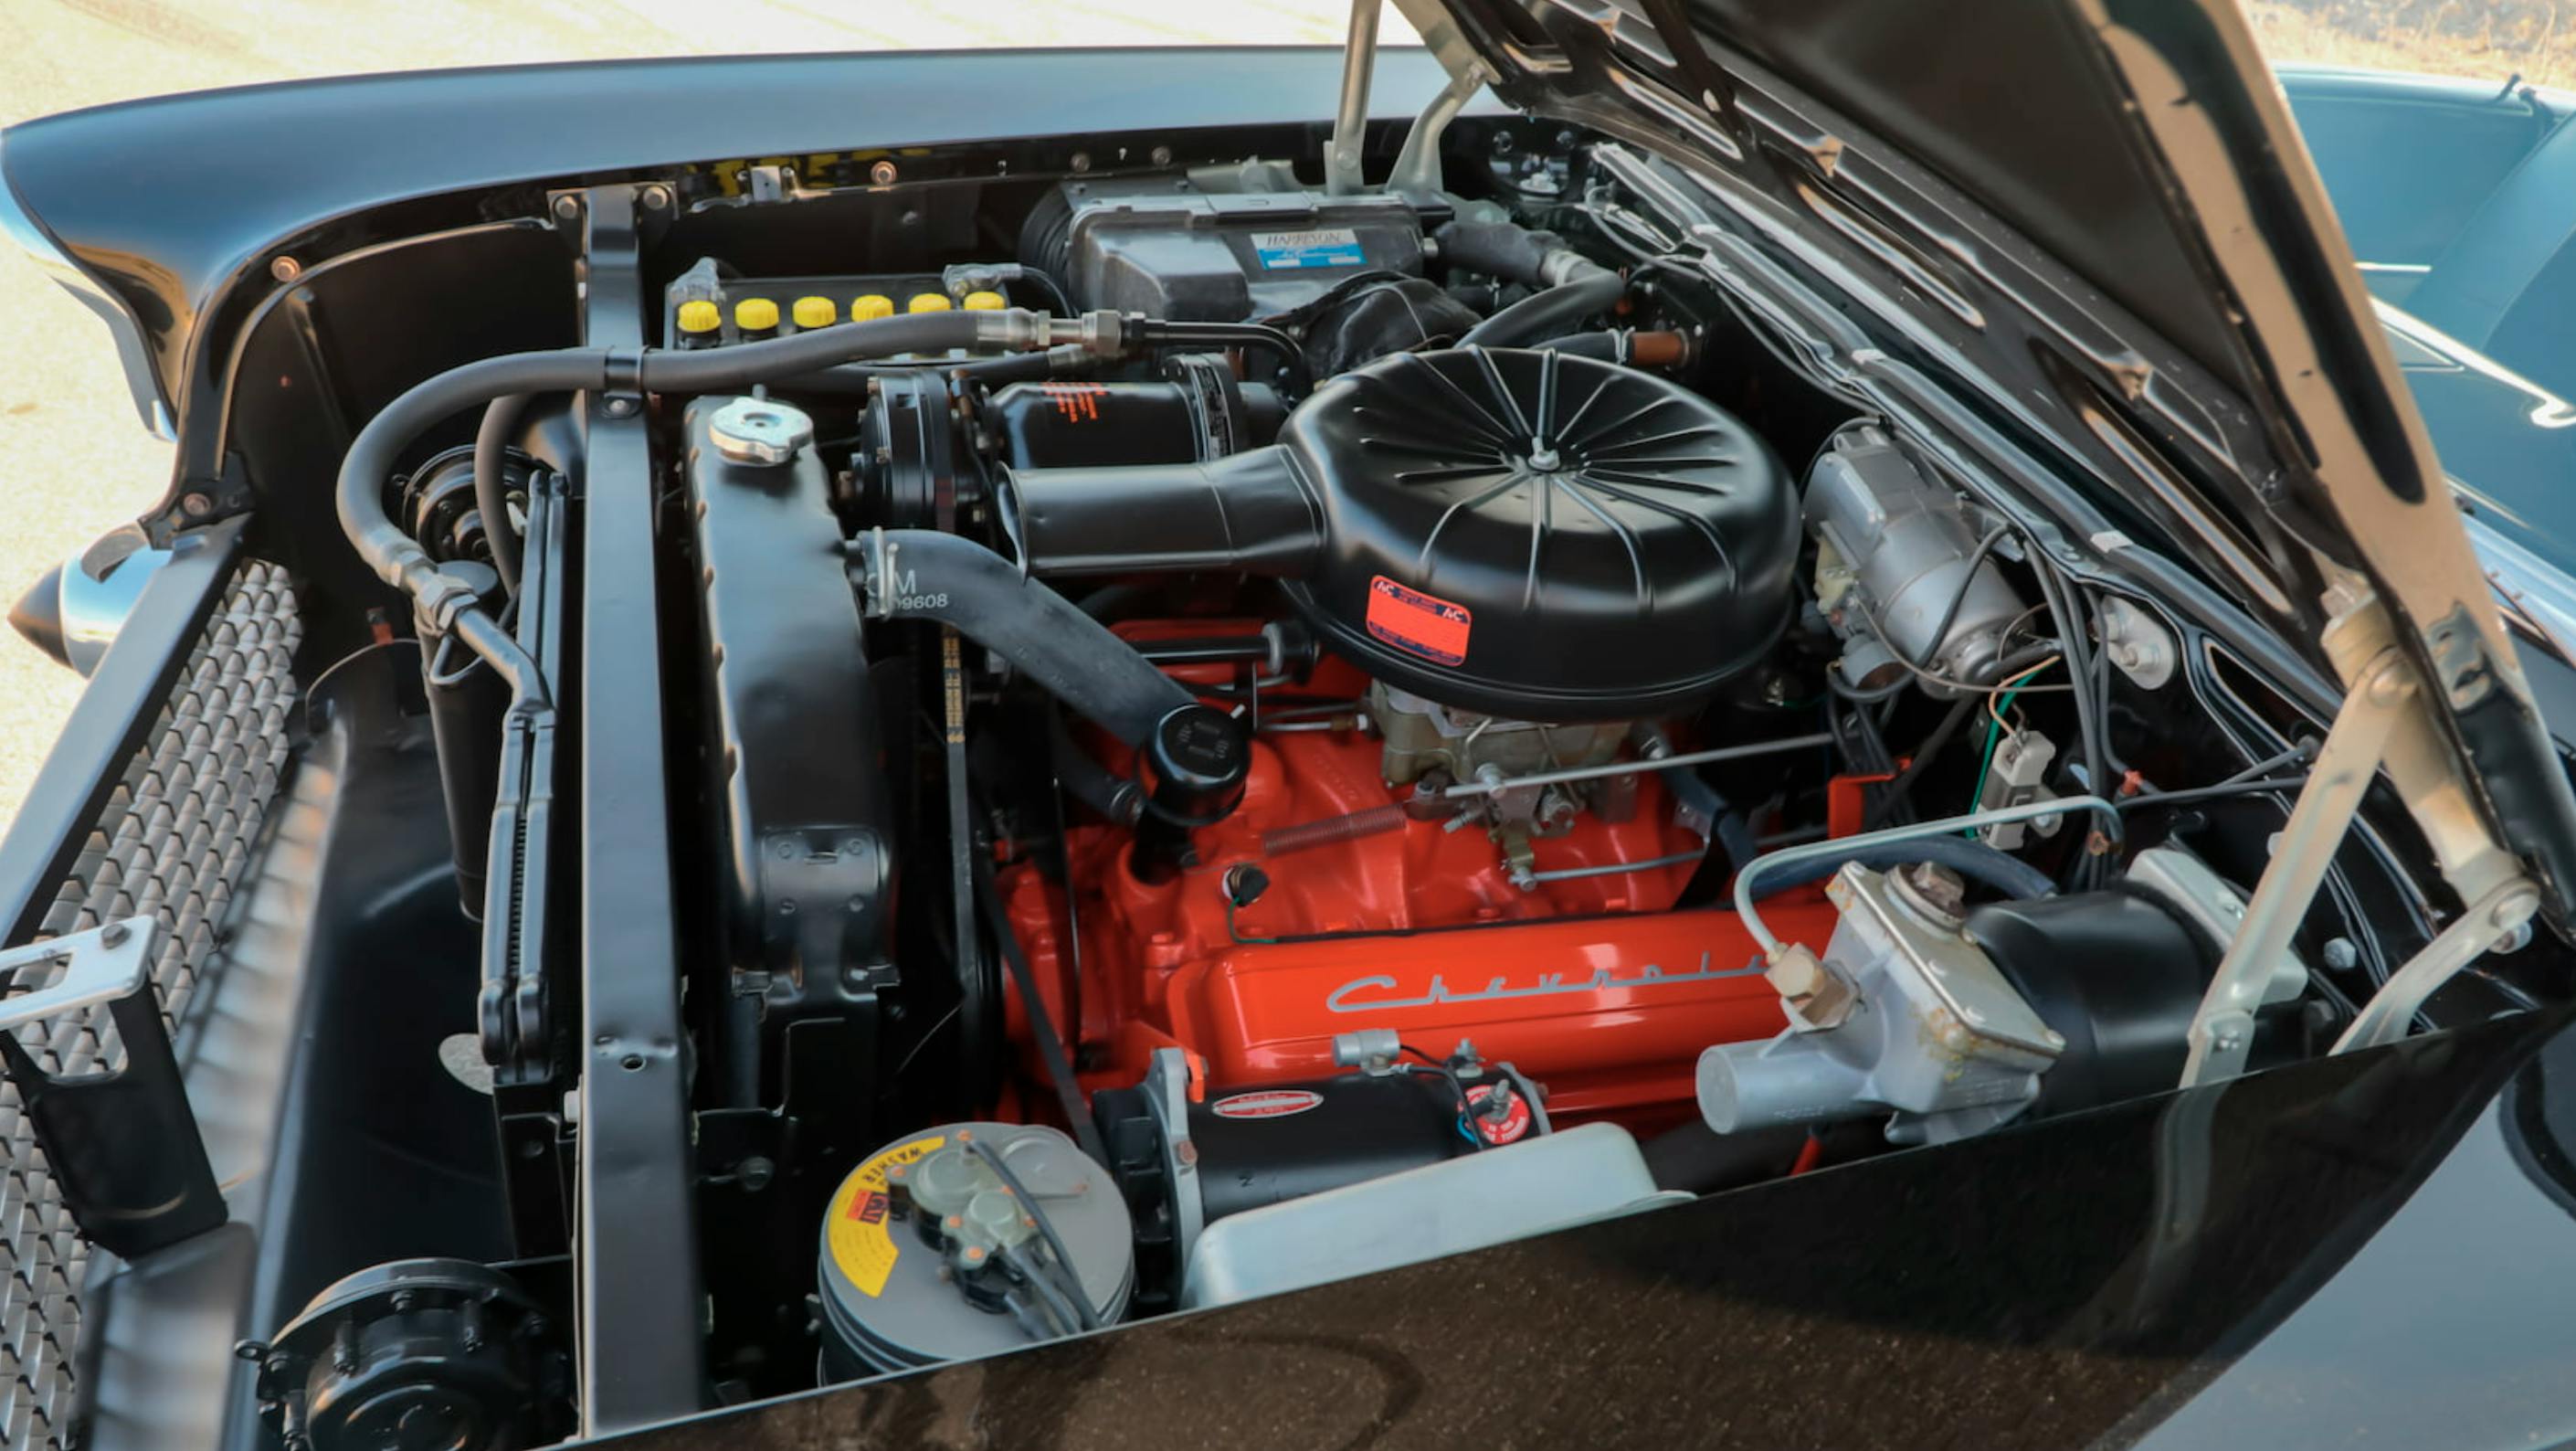 1957 El Morocco engine